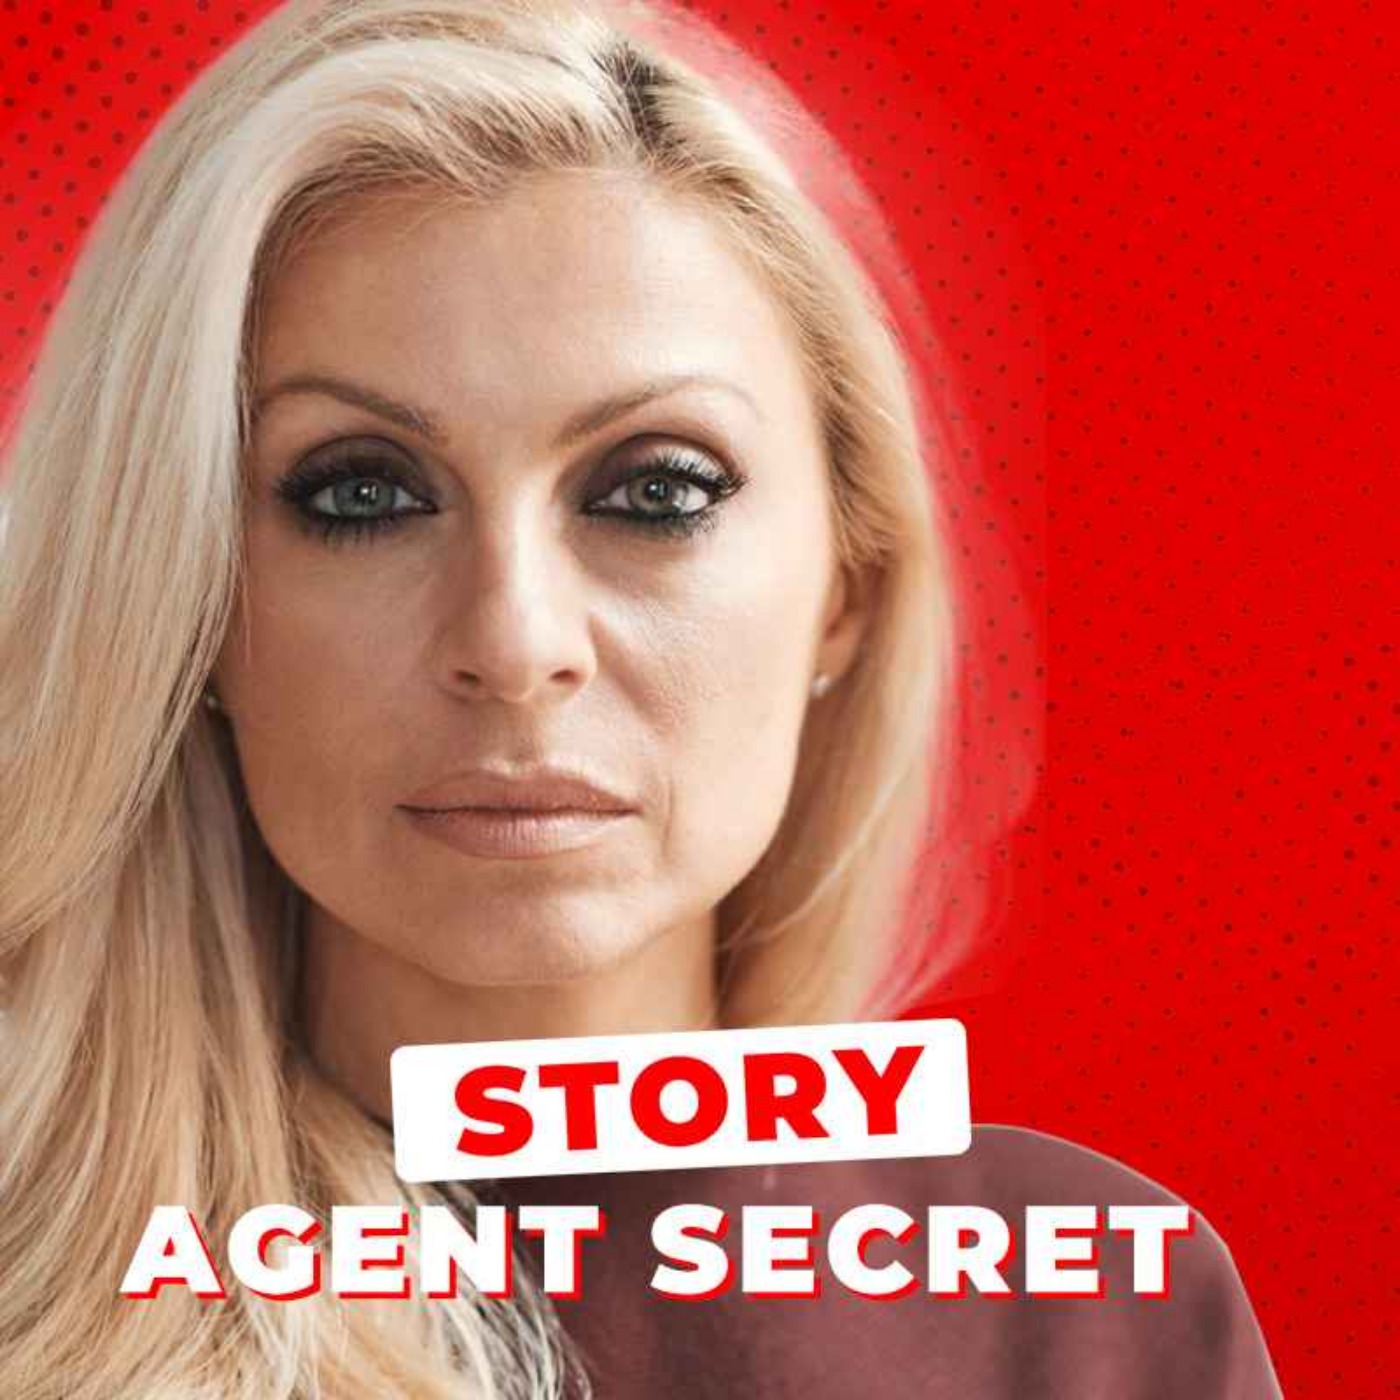 L'incroyabale STORY de cet Agent Secret